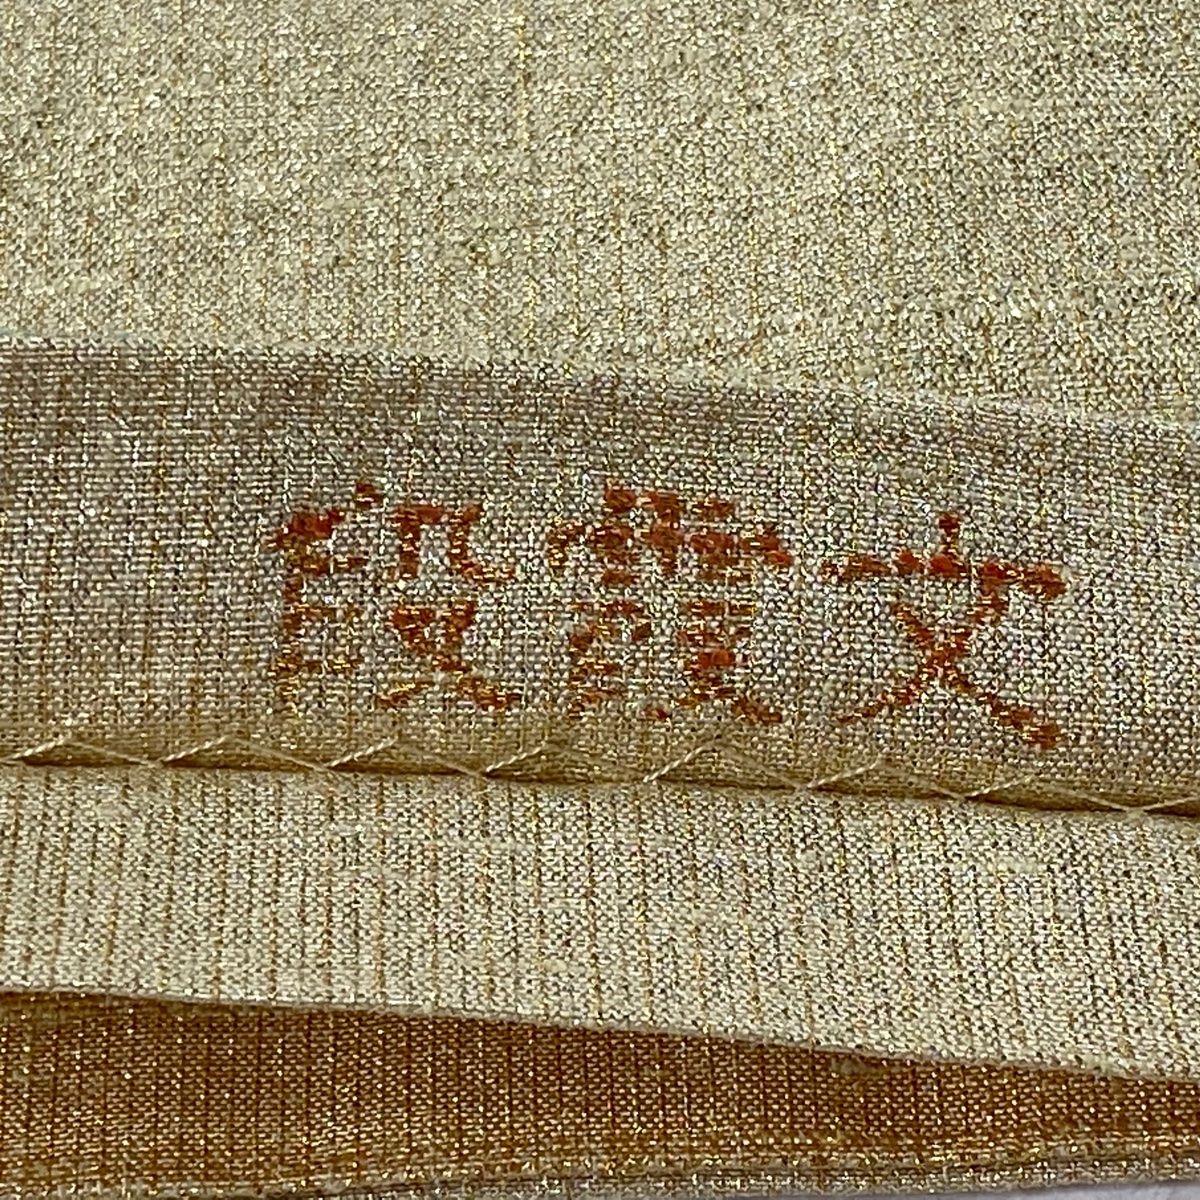 袋帯 ねん金綴錦 桝屋高尾 段霞文 金色 正絹セミフォーマル